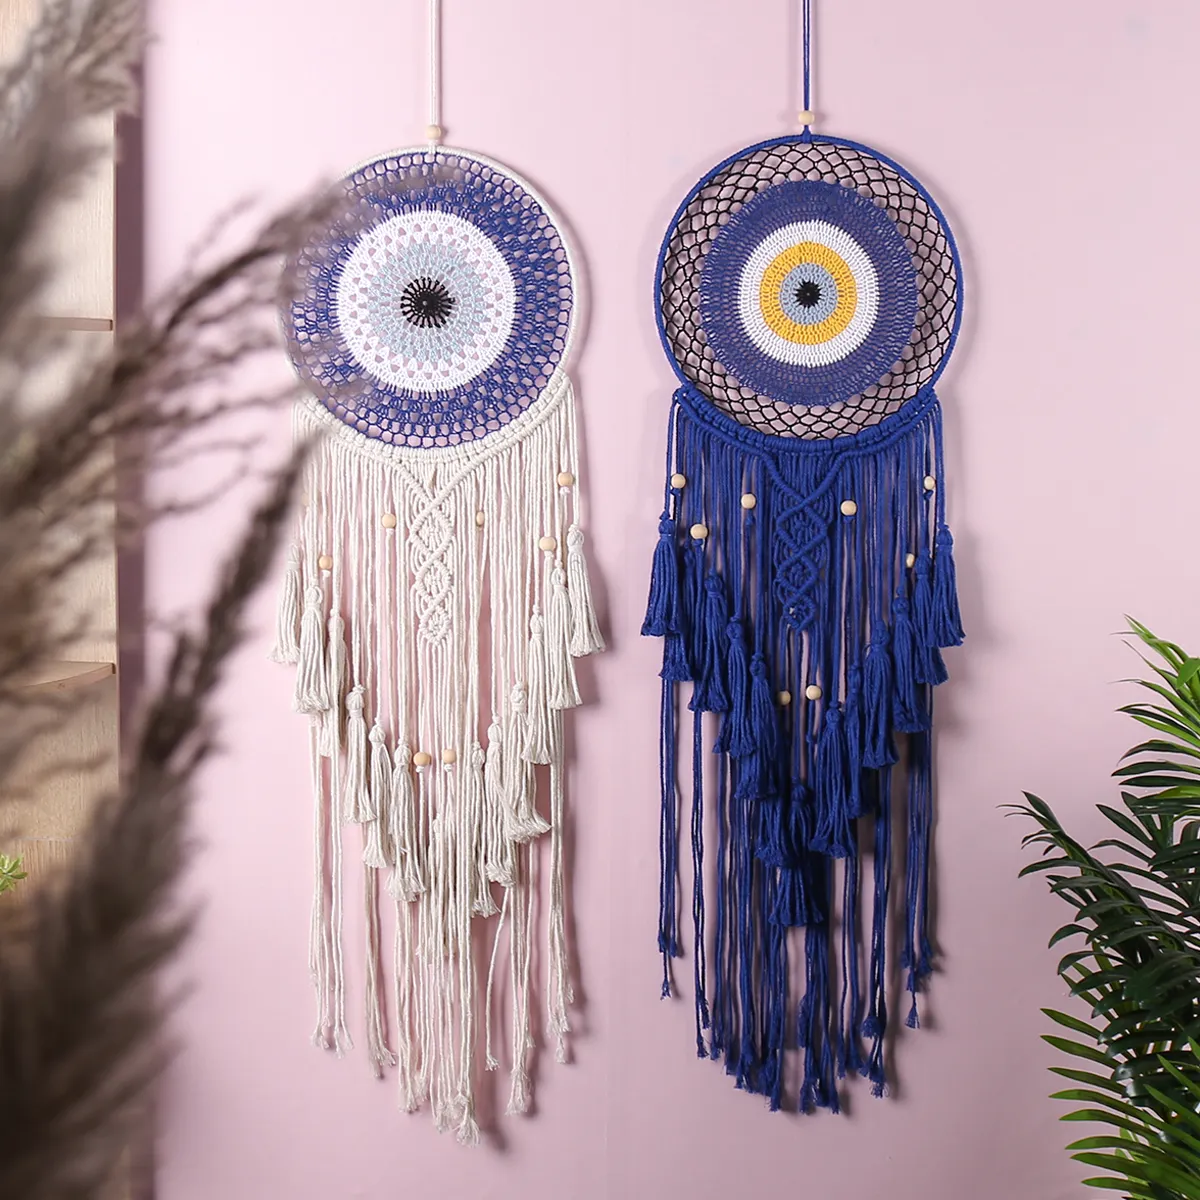 Desain baru Macrame bulat permadani gaya Bohemian mata jahat dekorasi dinding buatan tangan tenun tali katun permadani